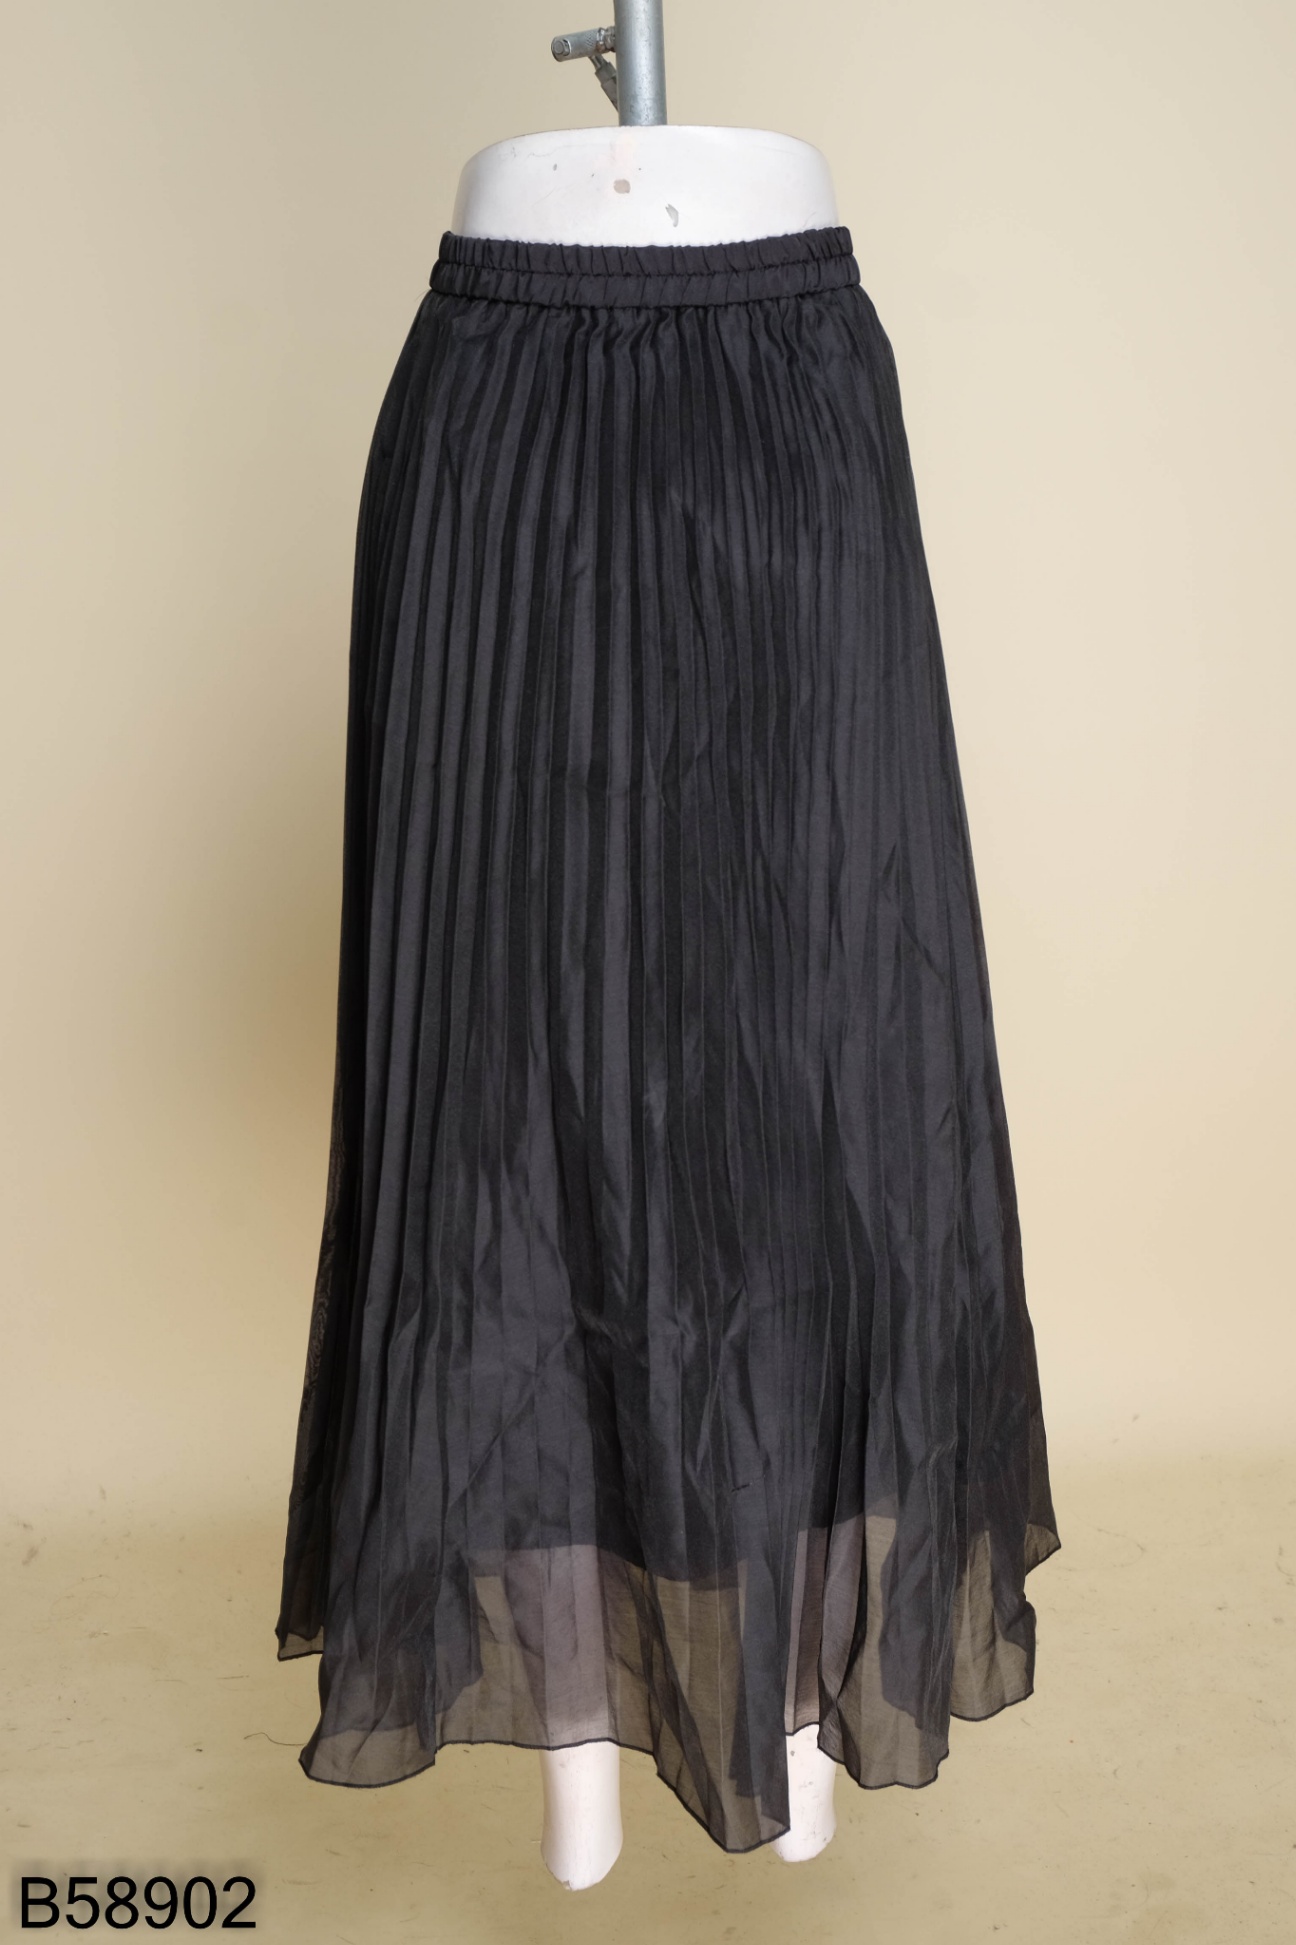 10 mẫu váy đen dài sang trọng, quý phái cho các chị em